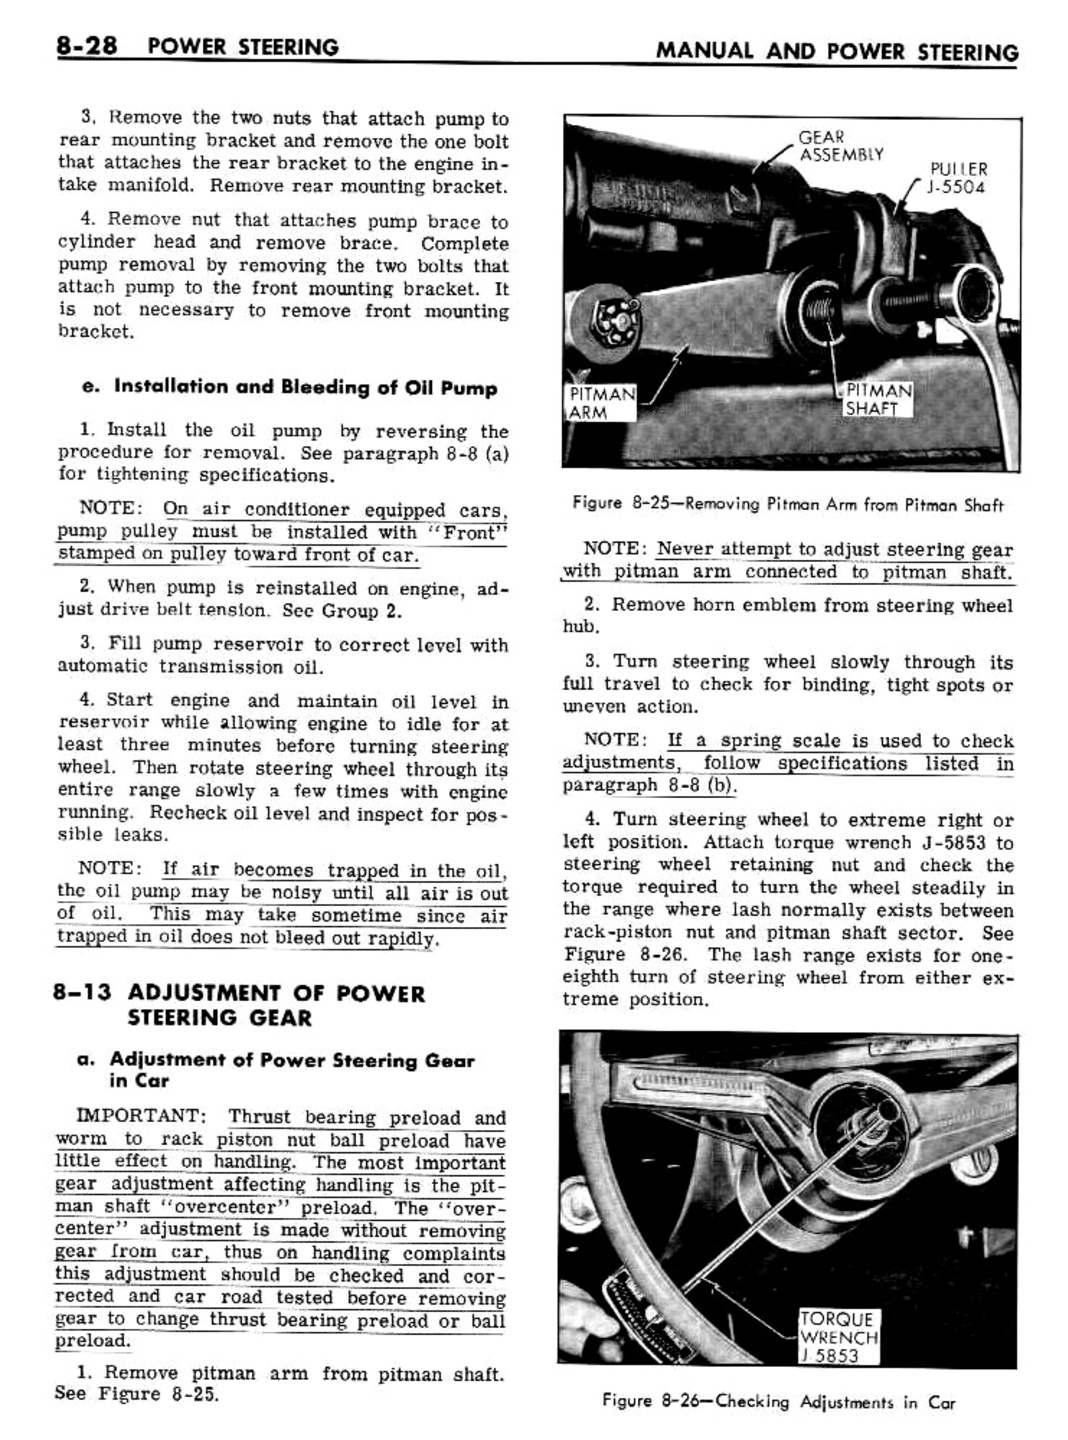 n_08 1961 Buick Shop Manual - Steering-028-028.jpg